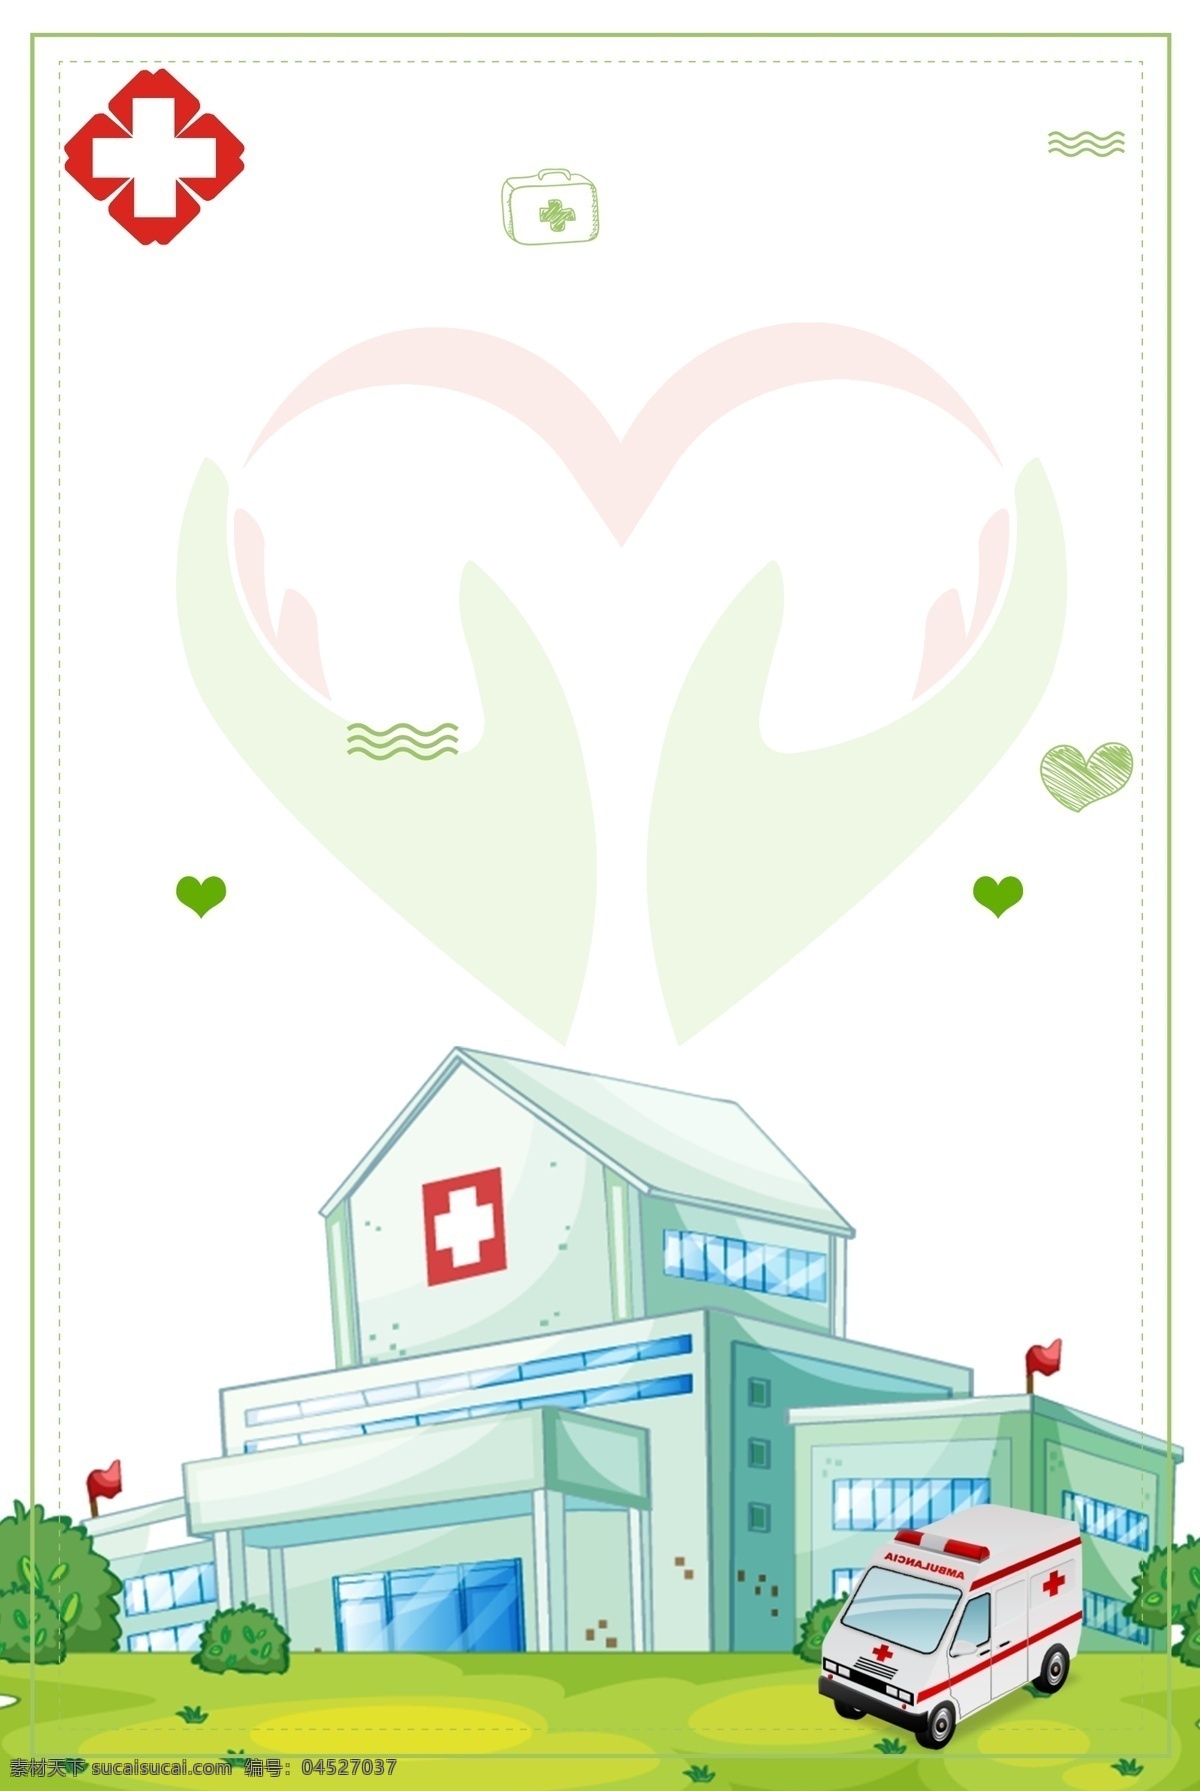 世界 急救 日 宣传海报 世界急救日 宣传 红十字 医学元素 医疗 医院 救护车 爱心